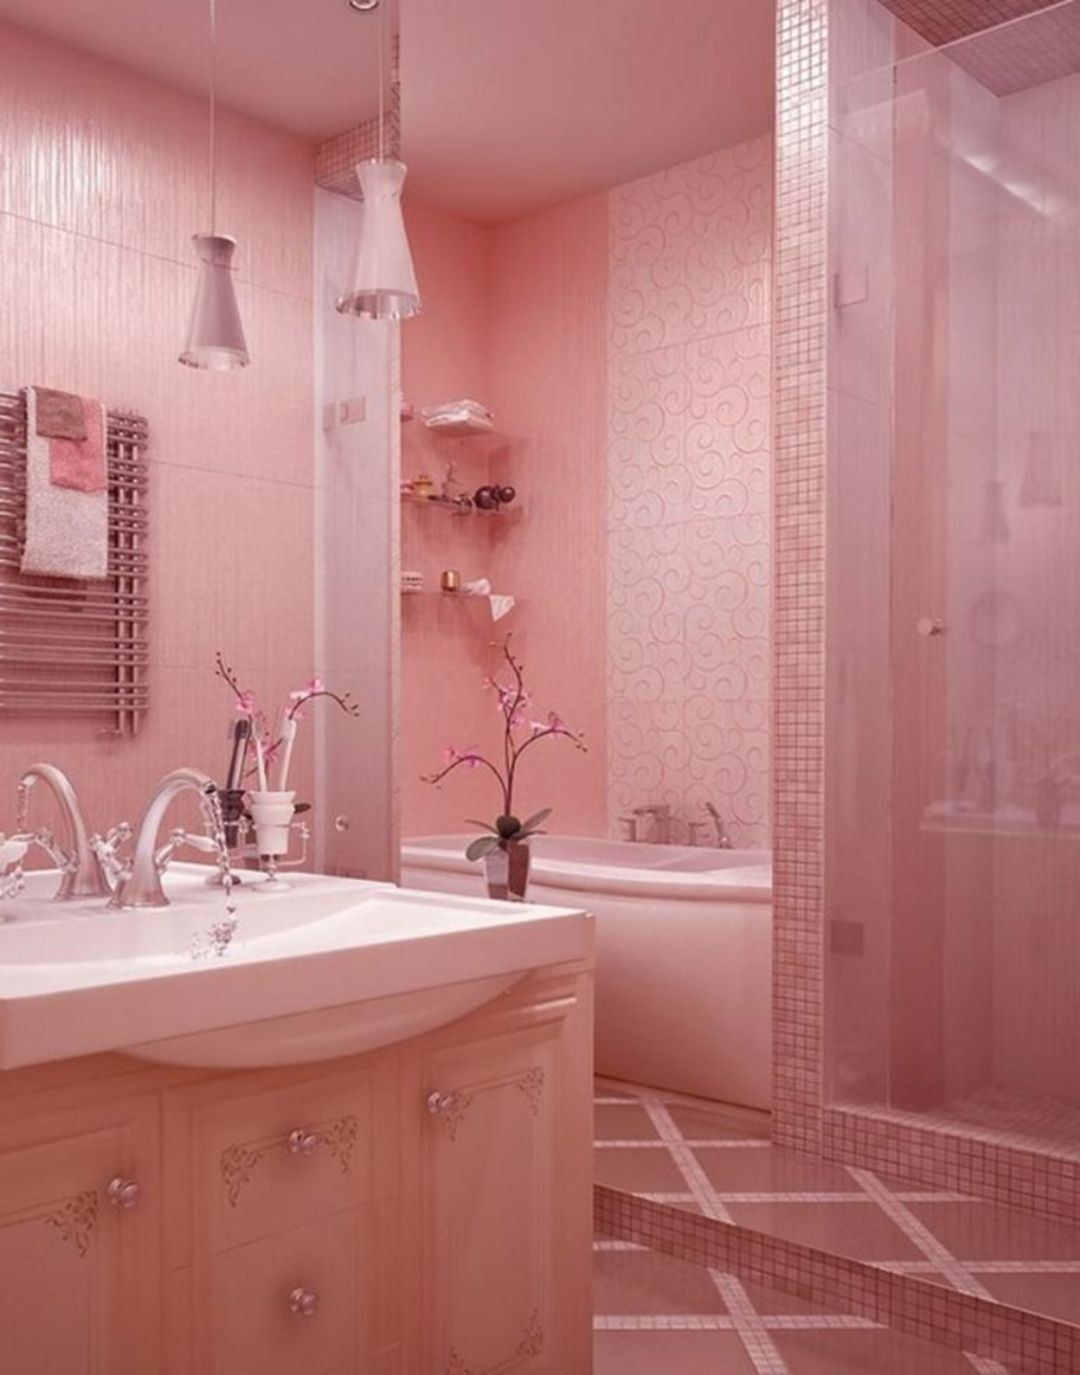 Плитка розовый цвет. Розовая ванная. Ванная в розовом цвете. Розовый кафель в ванной. Розовая плитка для ванной.